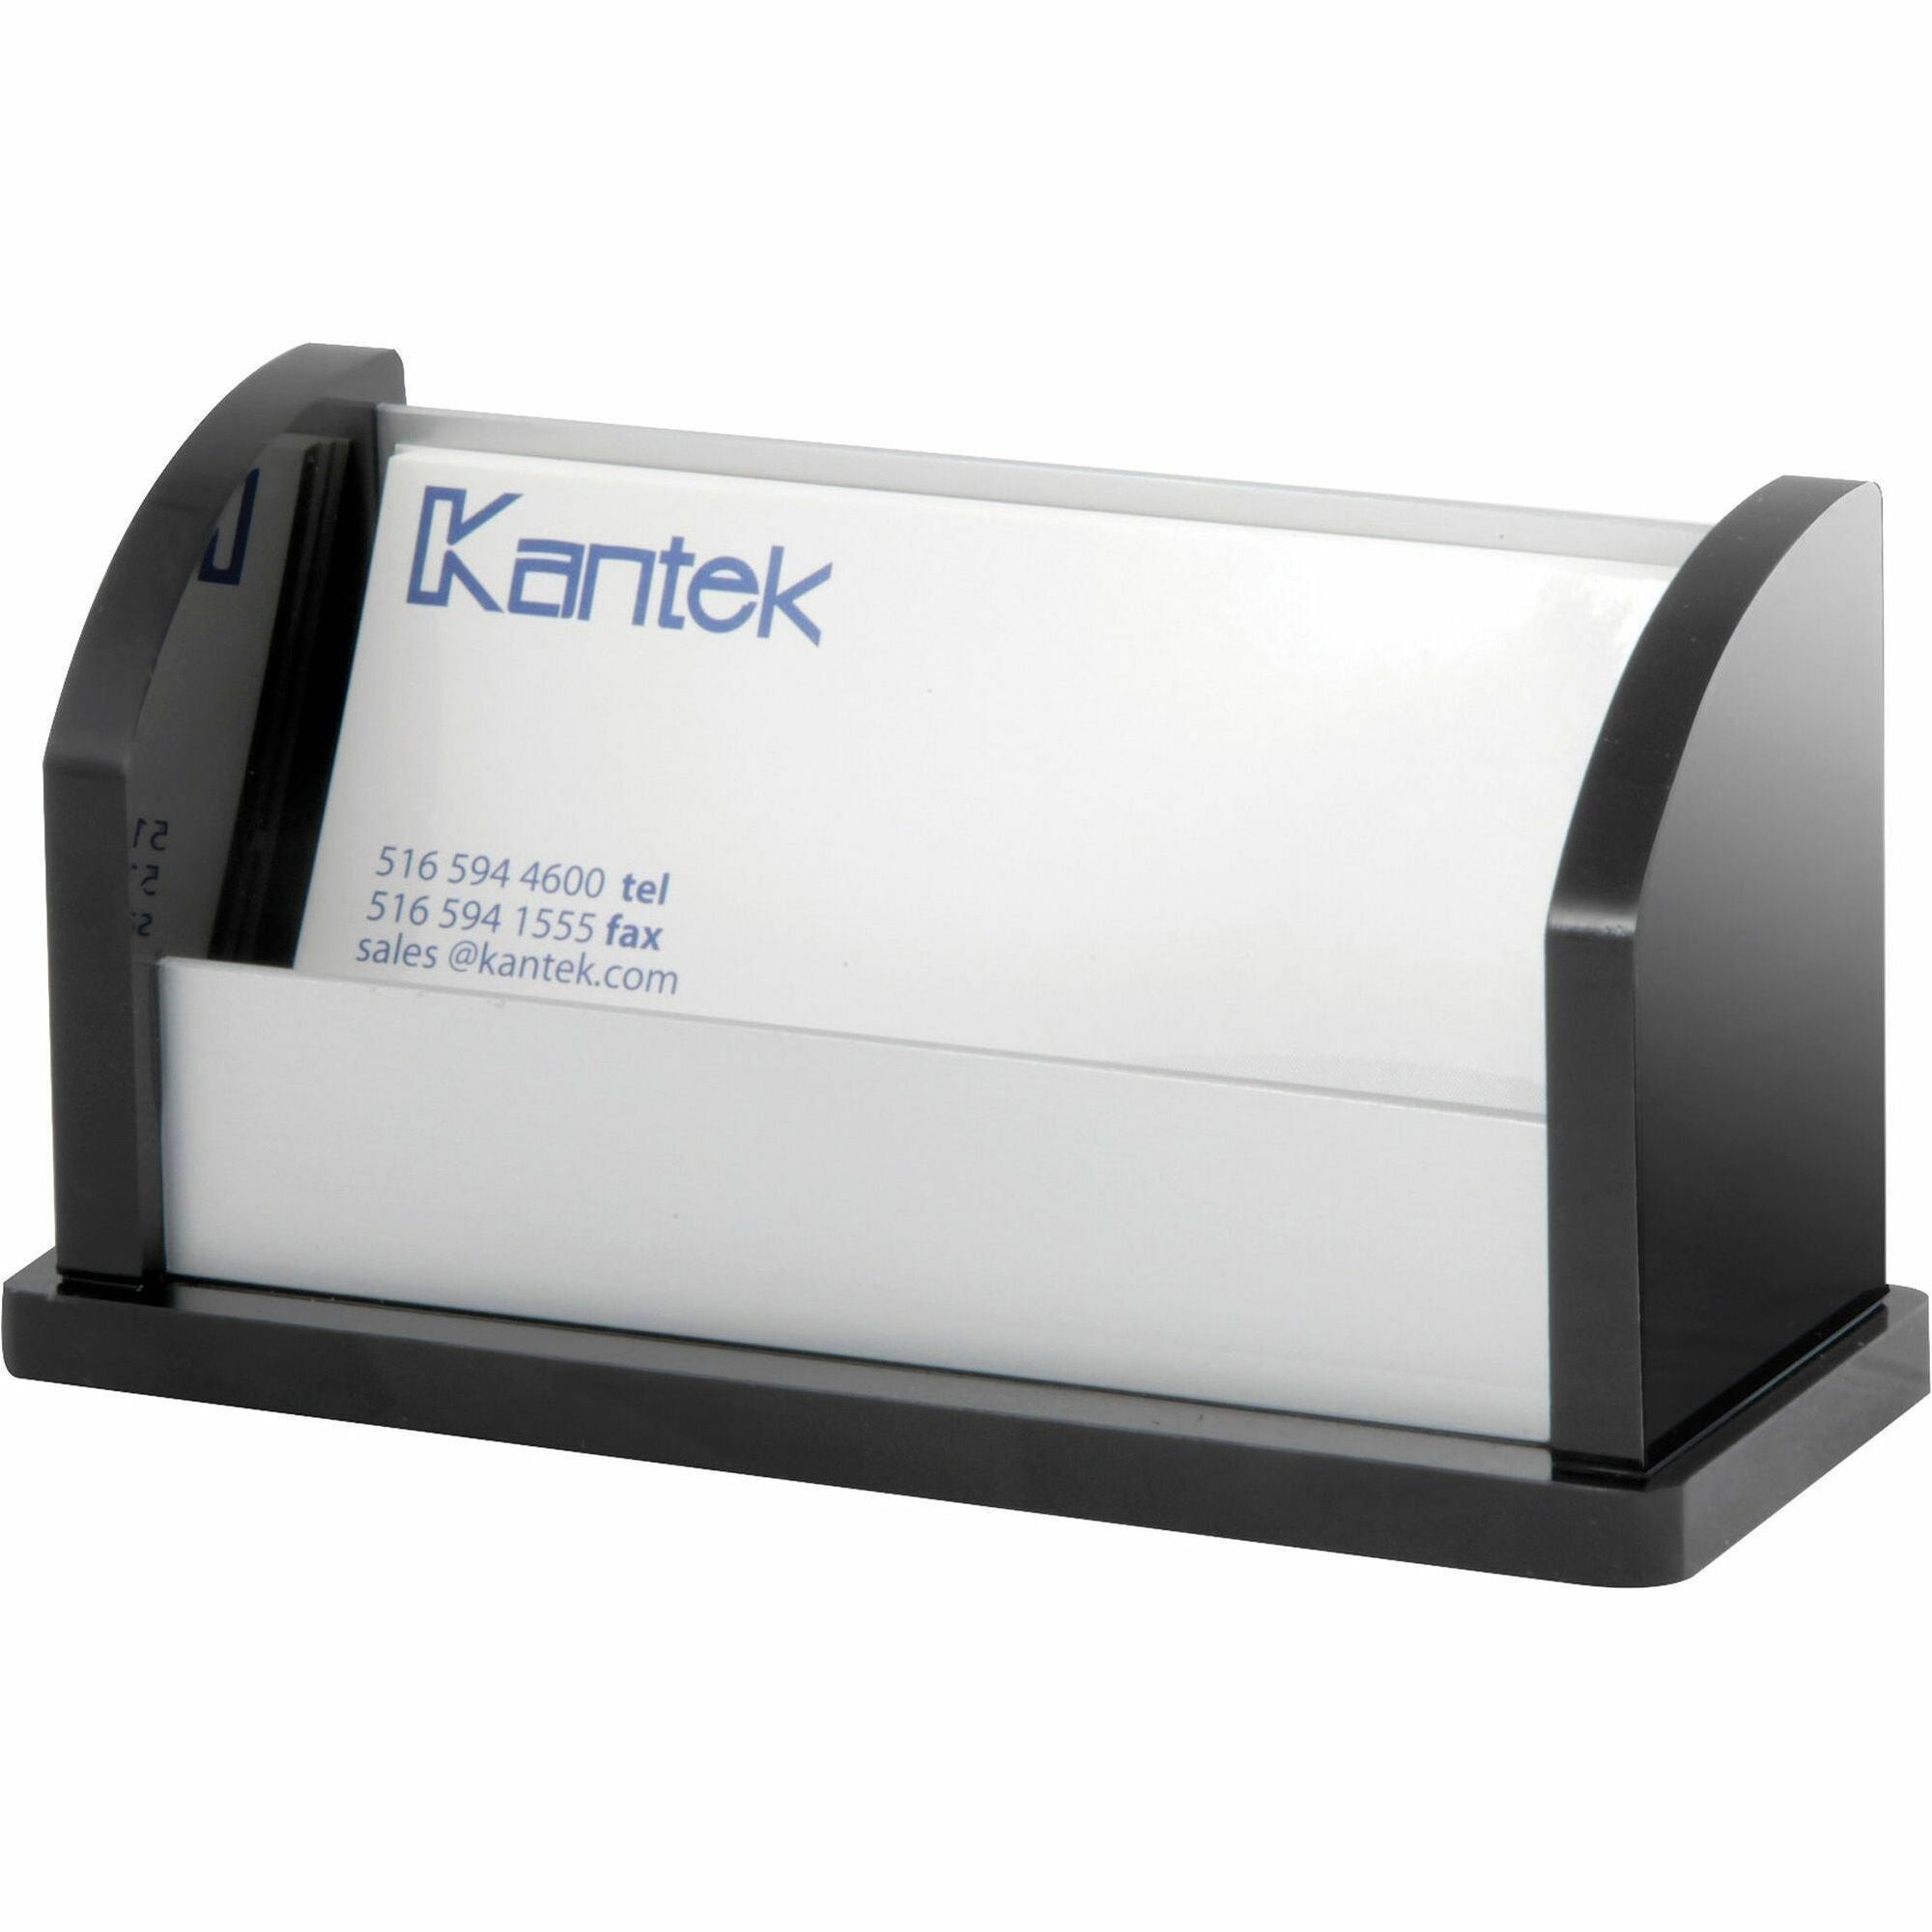 Kantek Business Card Holder - 2.3" x 4.4" x 1.8" x - Aluminum - 1 Each - Aluminum - 